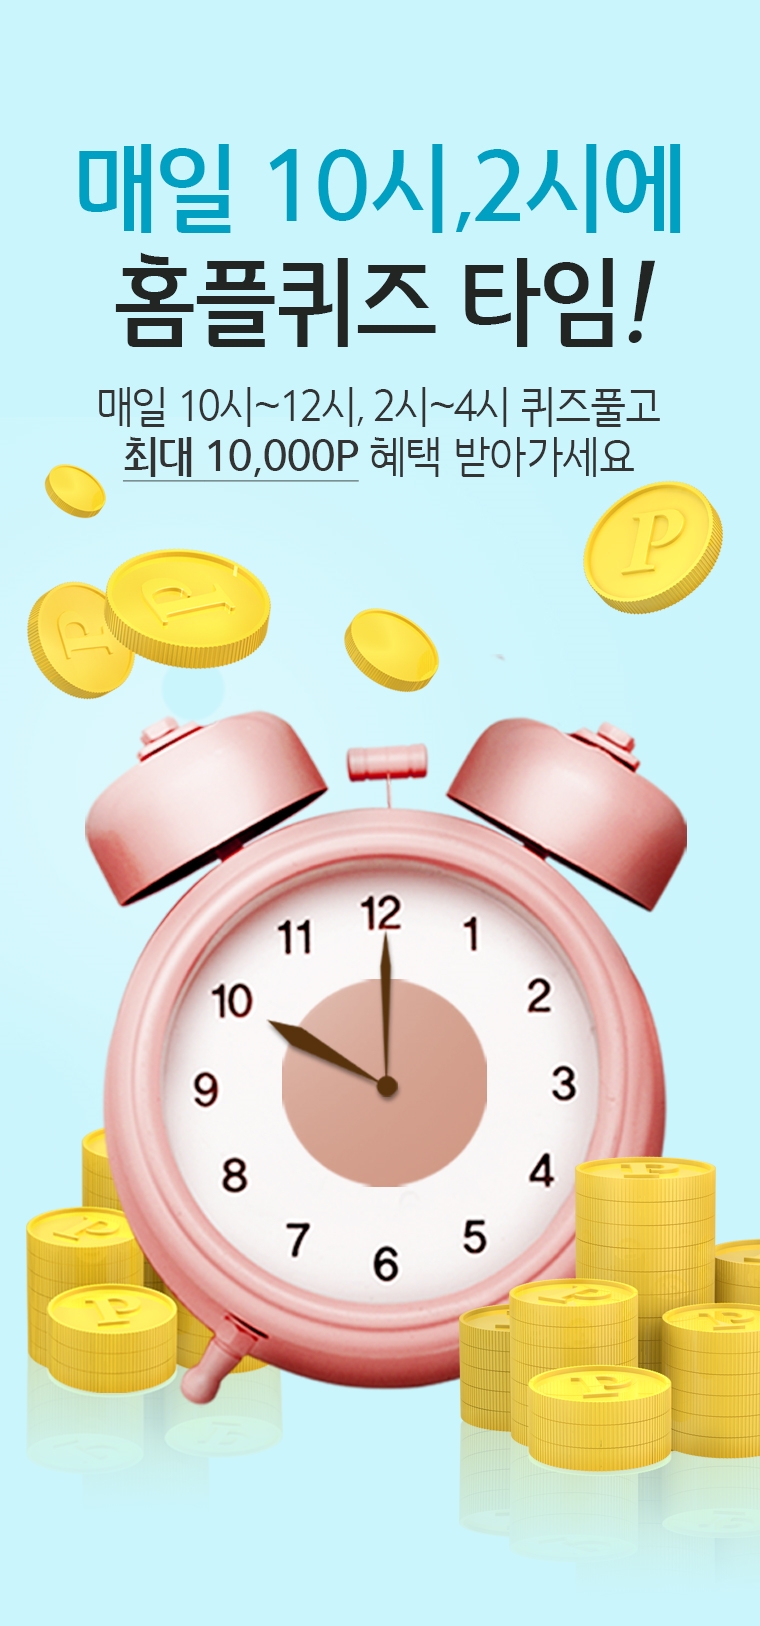 4월 1일 오후 홈플퀴즈 ‘멤버특가 전복갈비찜’ 문제와 힌트 공개